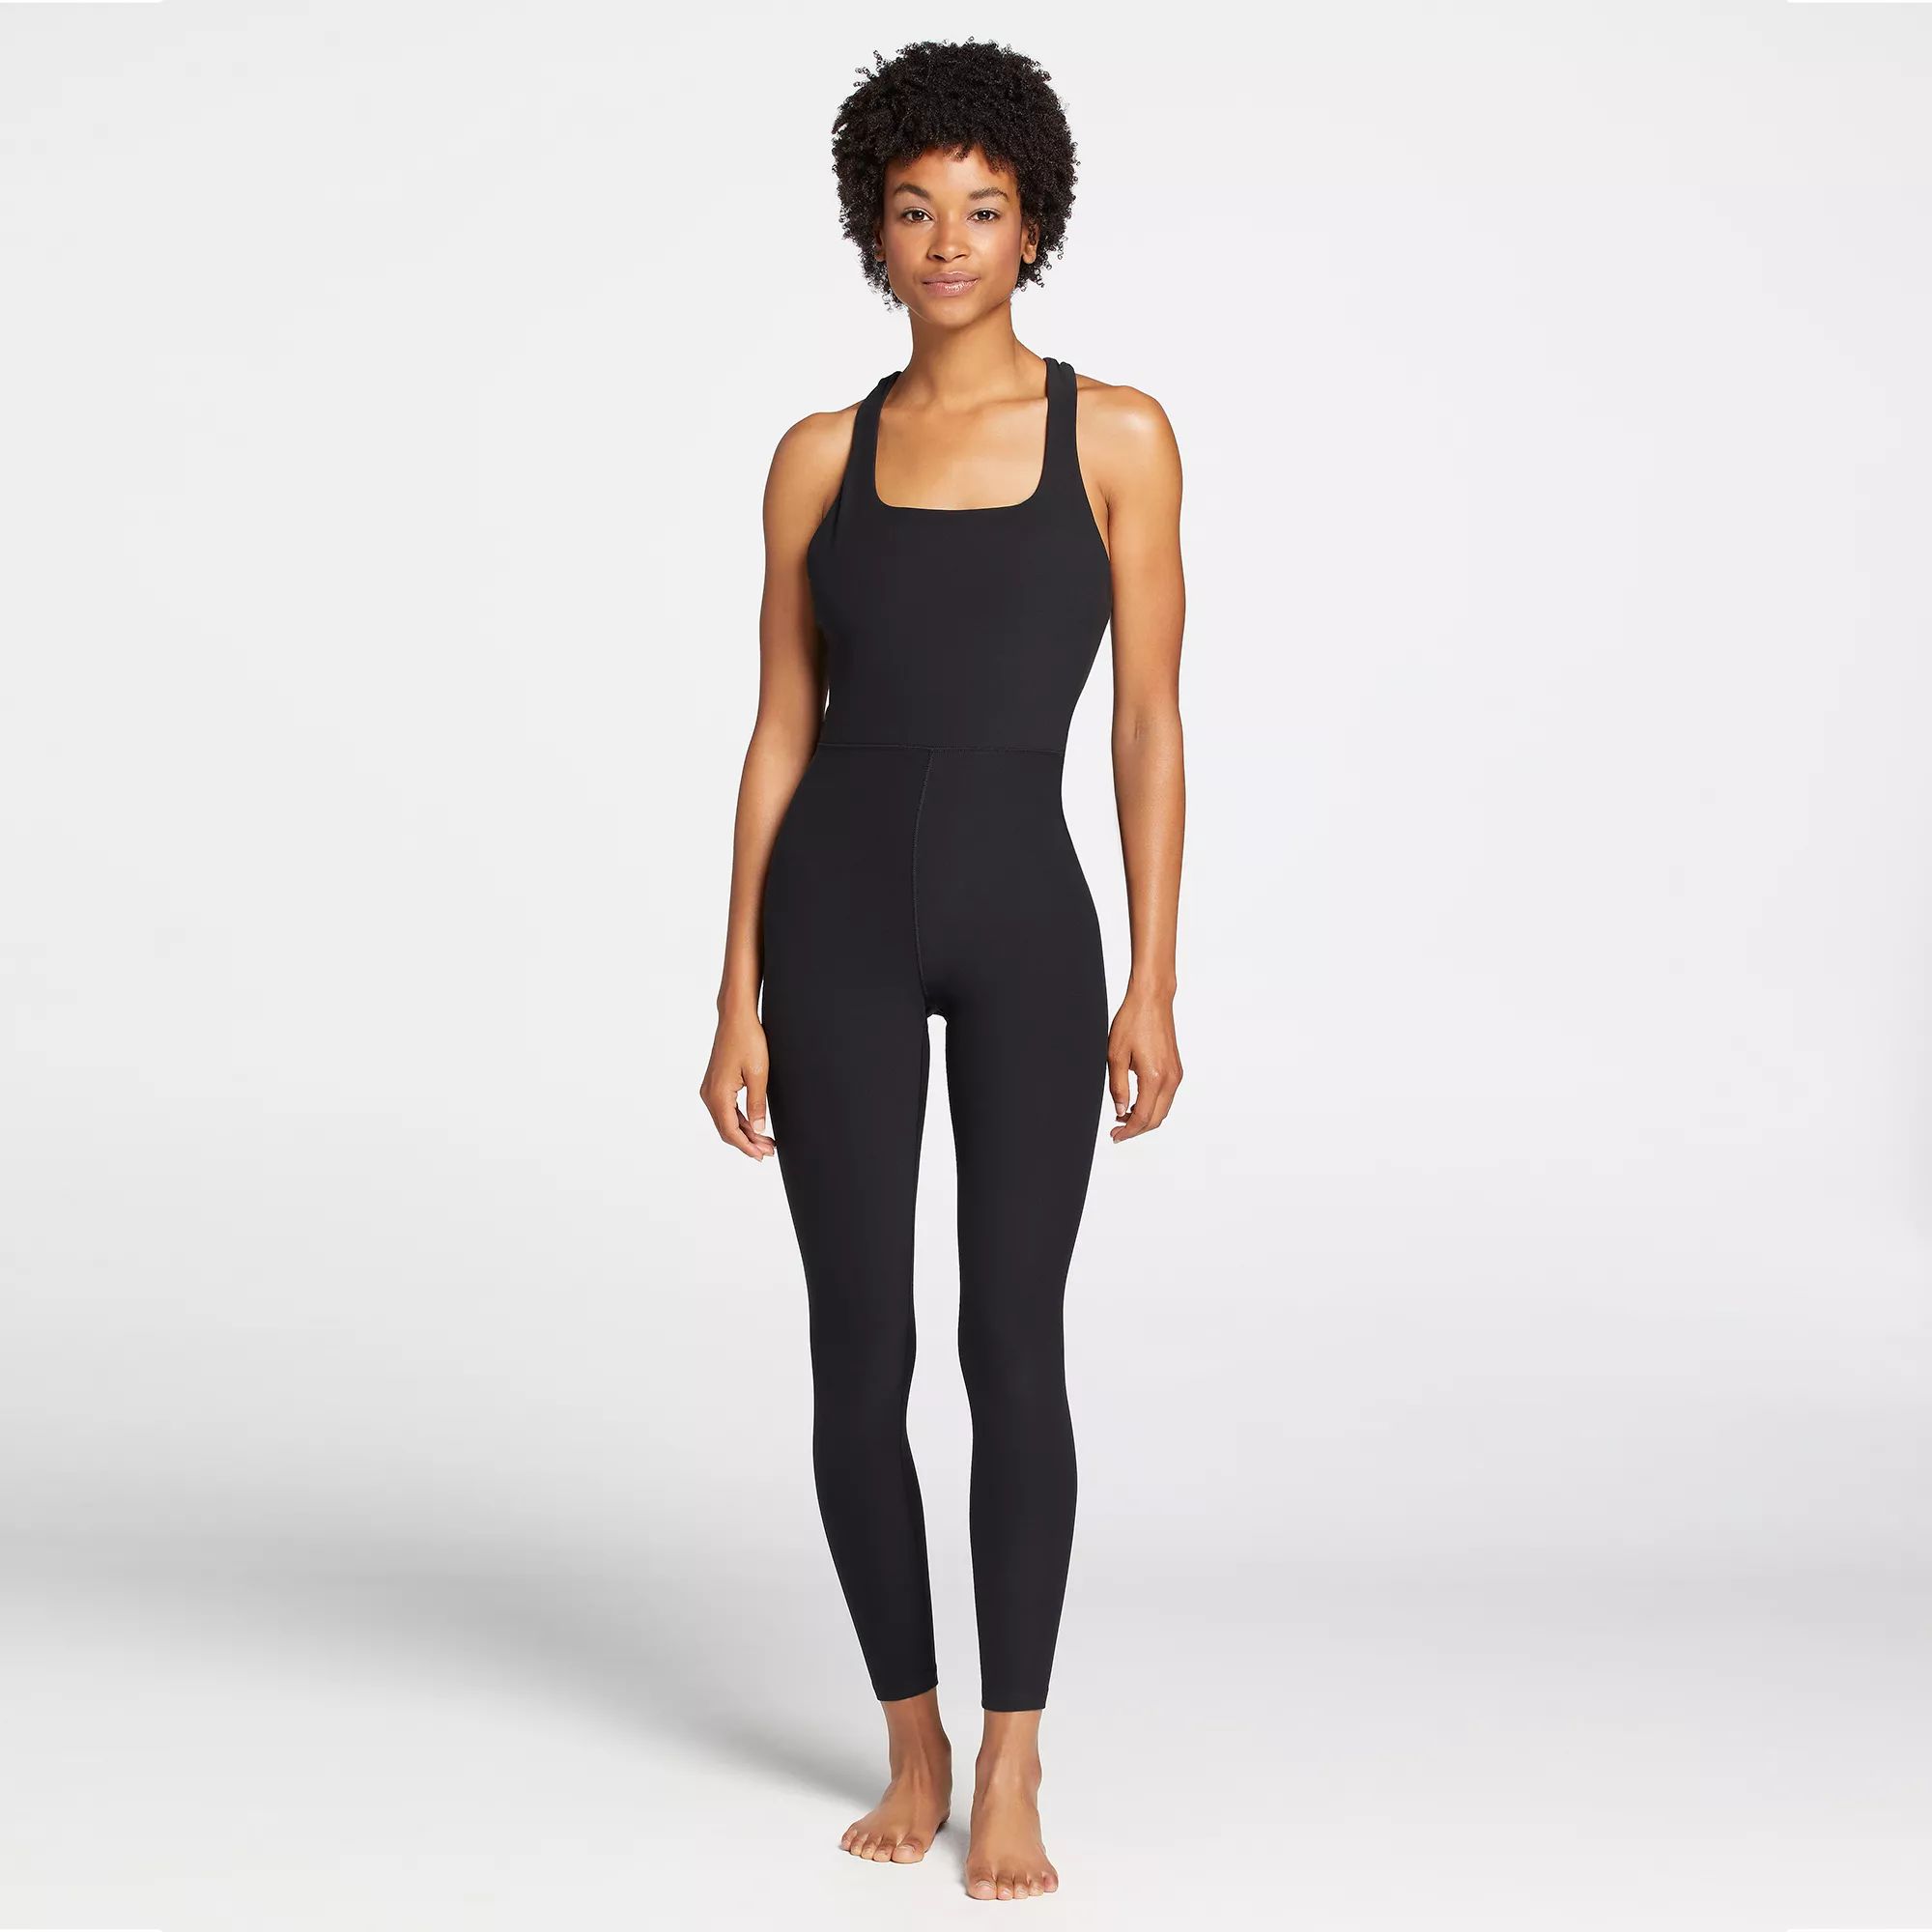 CALIA Women's LustraLux Bodysuit, Medium, Pure Black | Dick's Sporting Goods